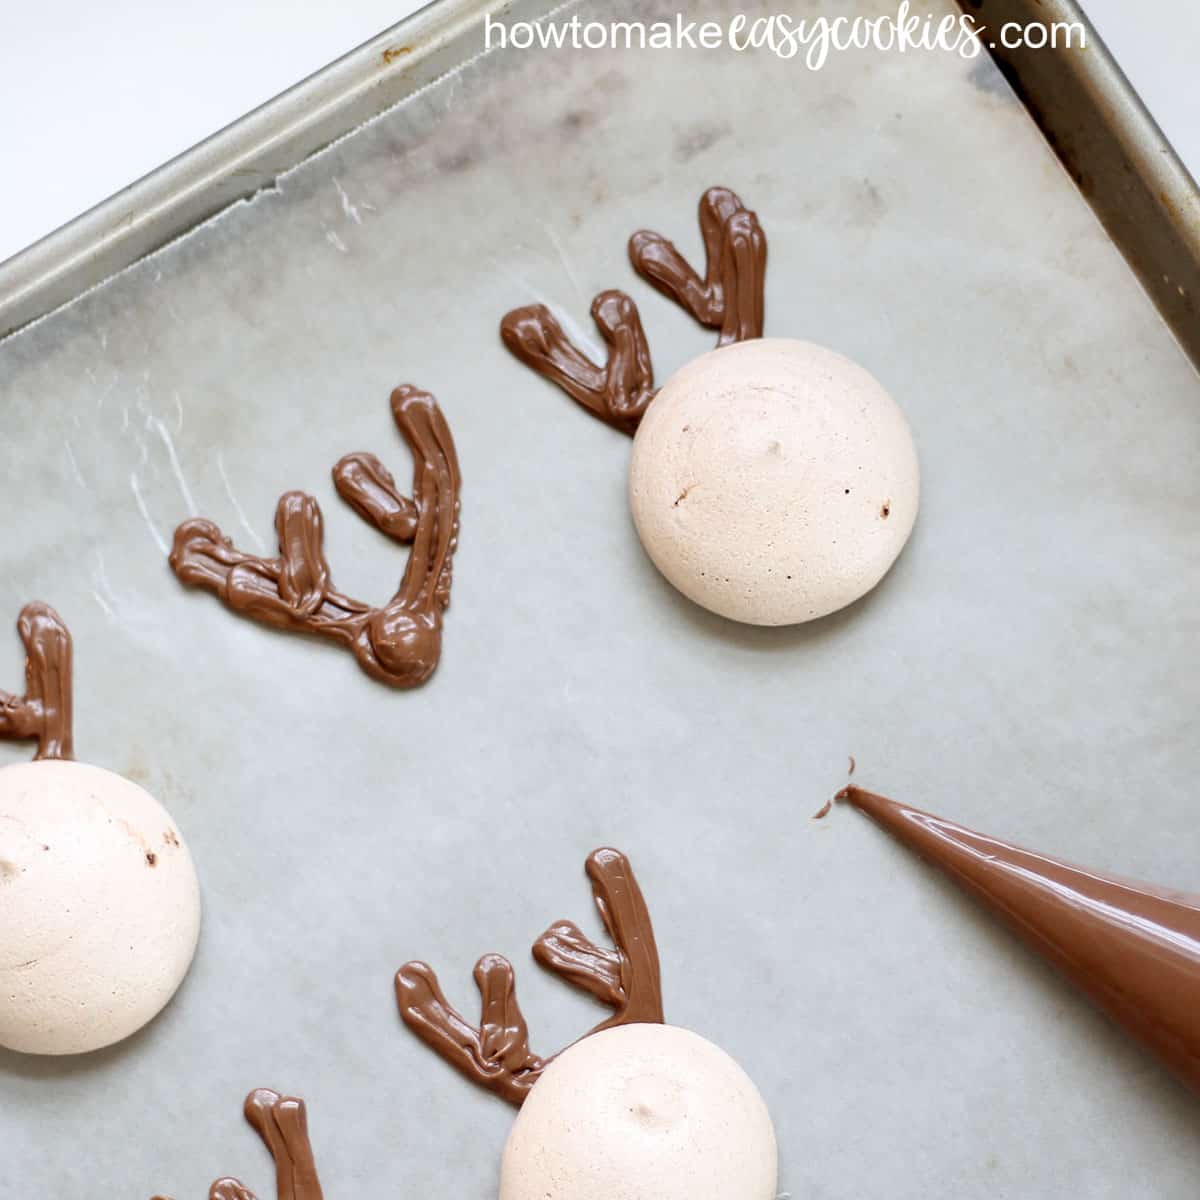 Piping chocolate for reindeer meringue Christmas cookies